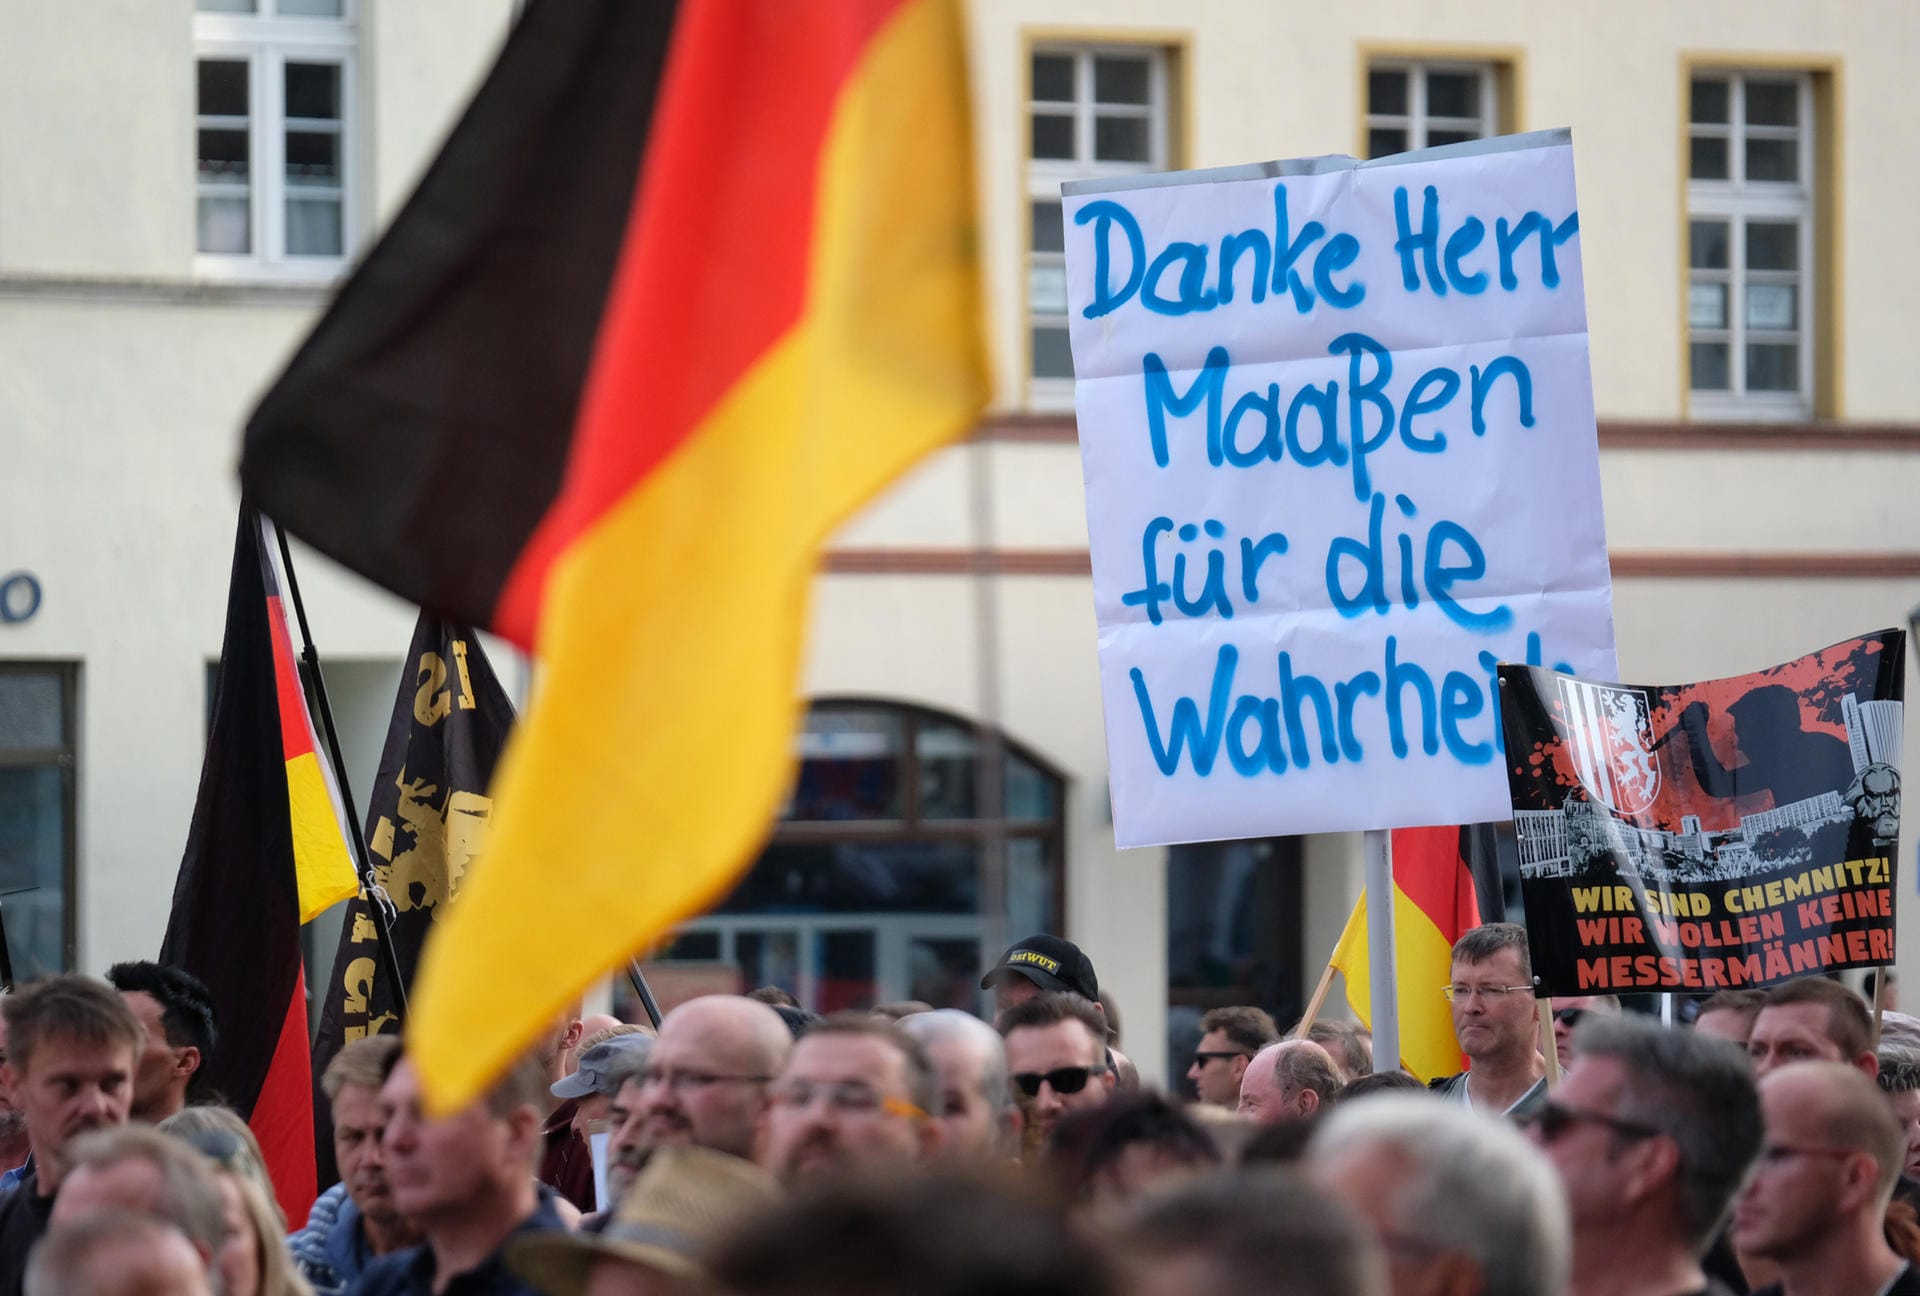 Teilnehmer der Demonstration von rechtsgerichteten Bündnissen halten ein Plakat "Danke Herr Maaßen für die Wahrheit".